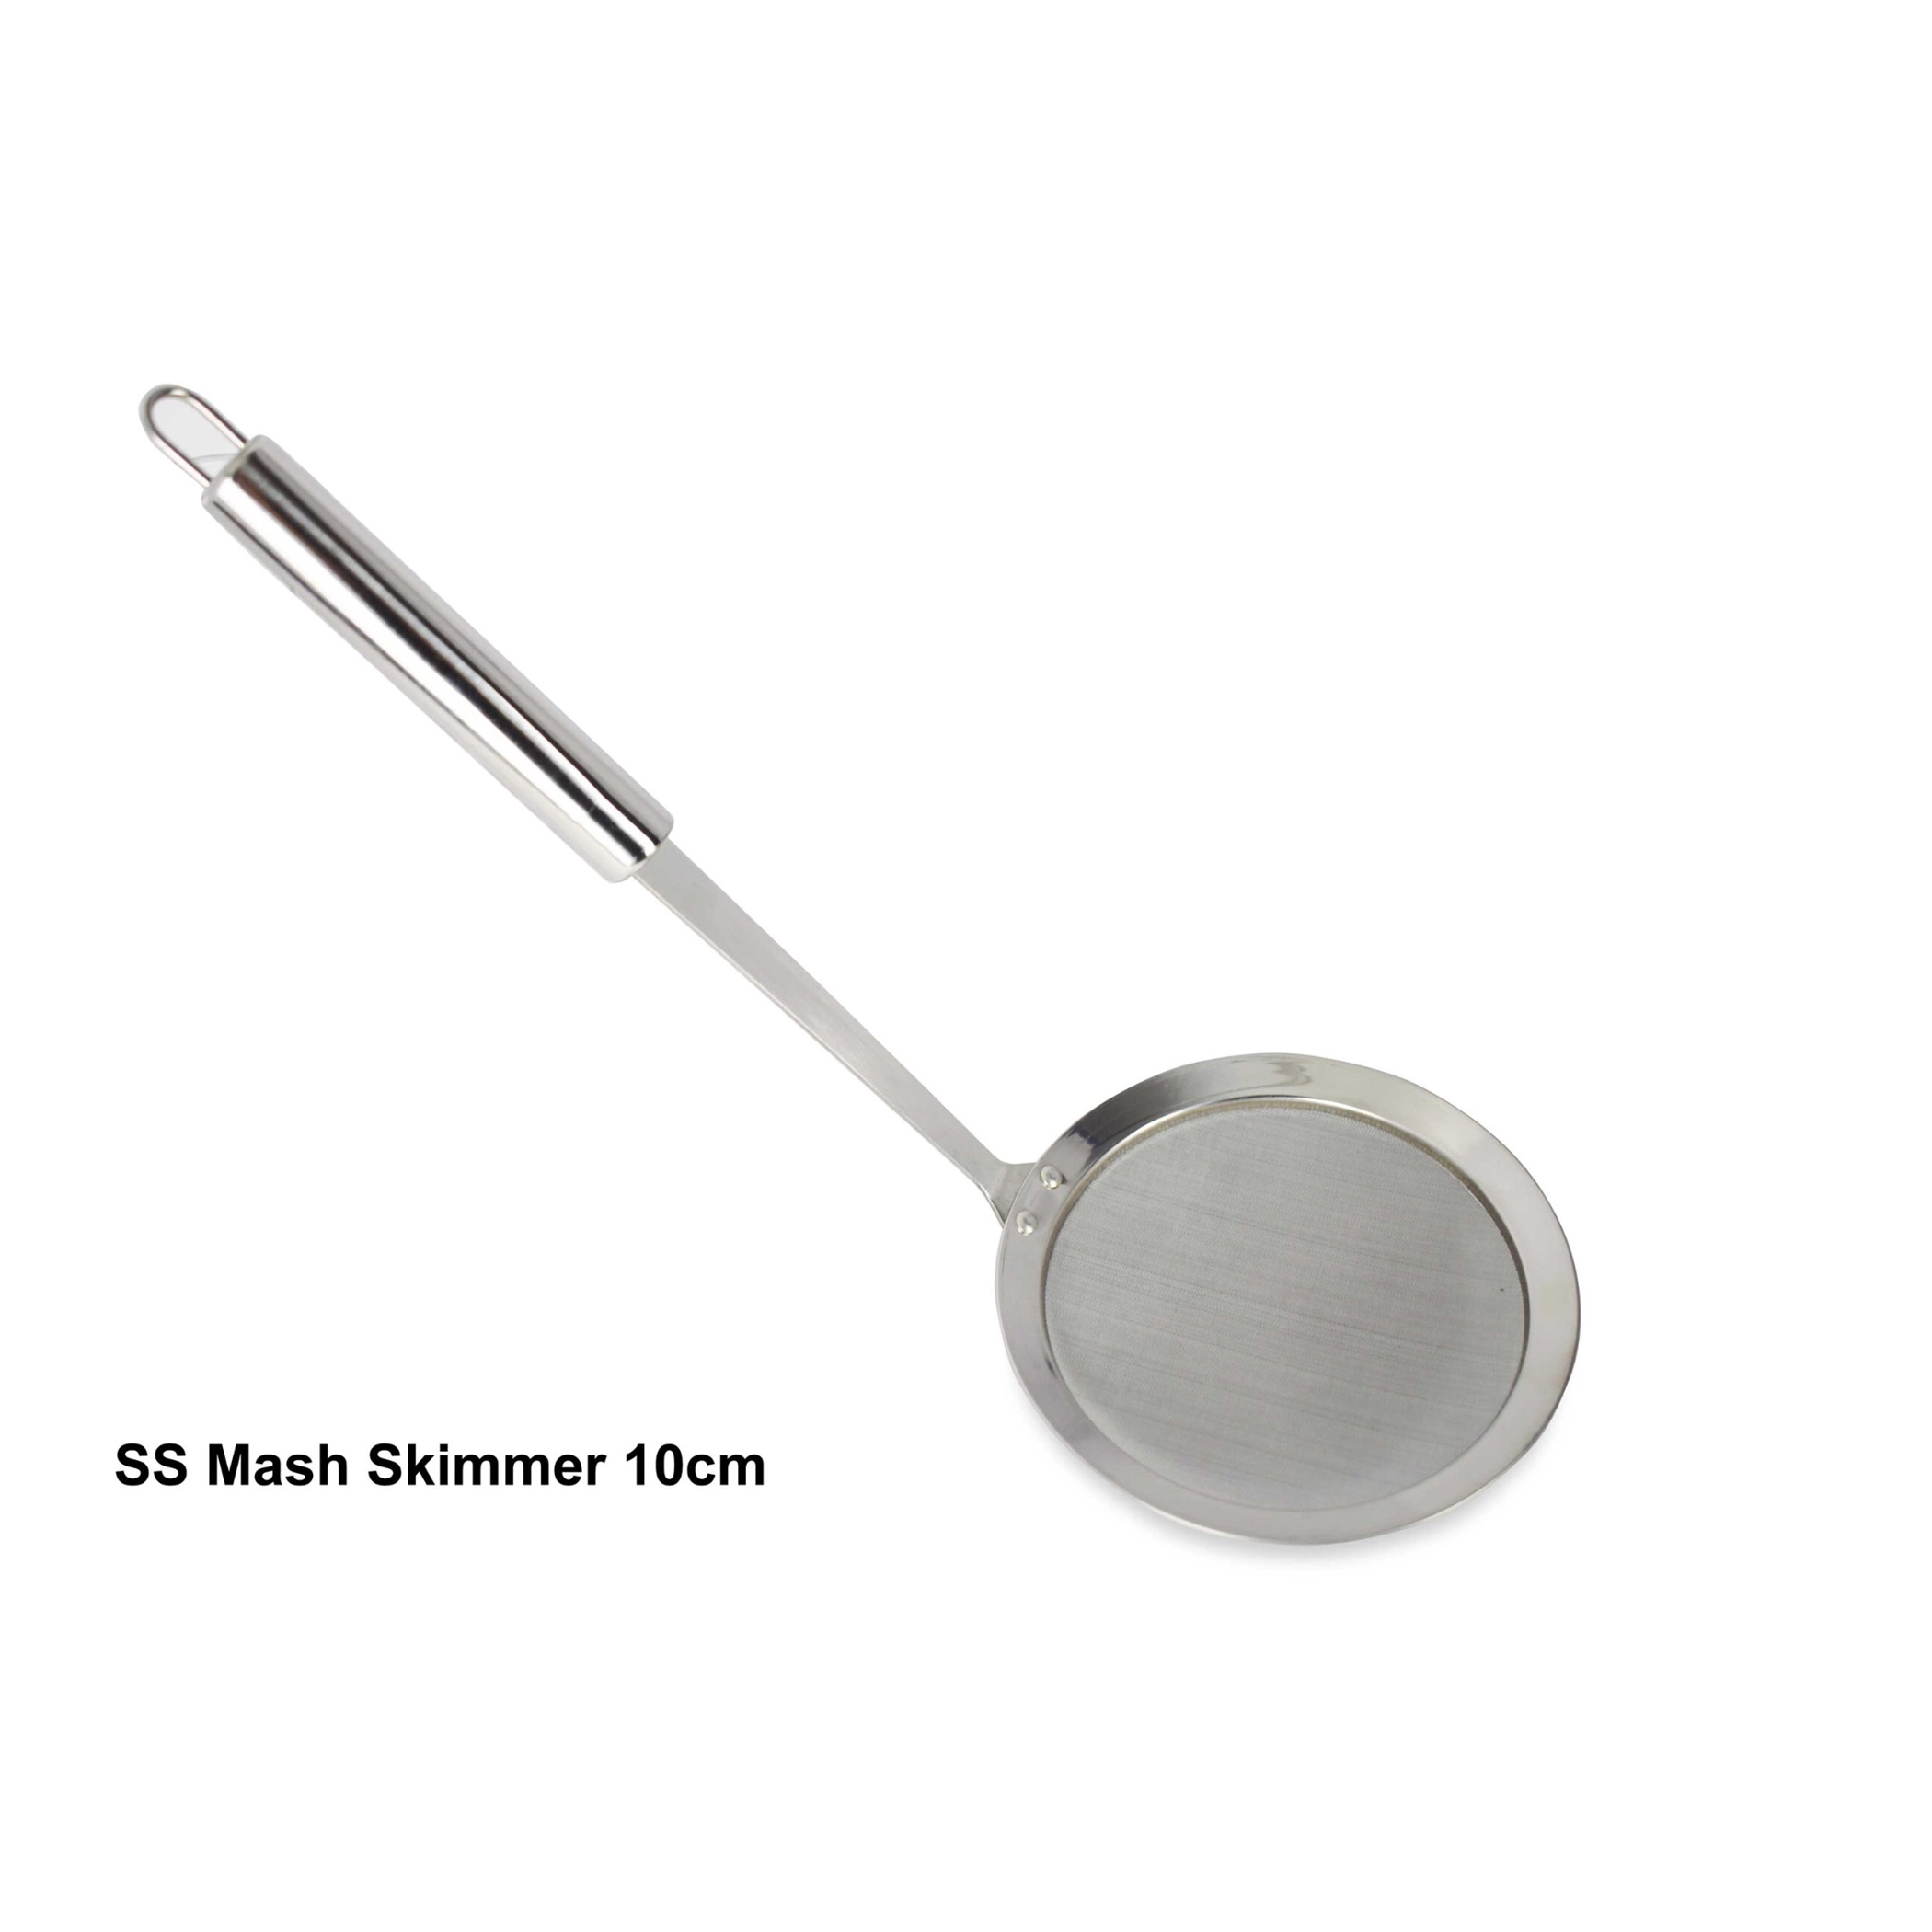 Stainless Steel Mash Skimmer - 10 cm